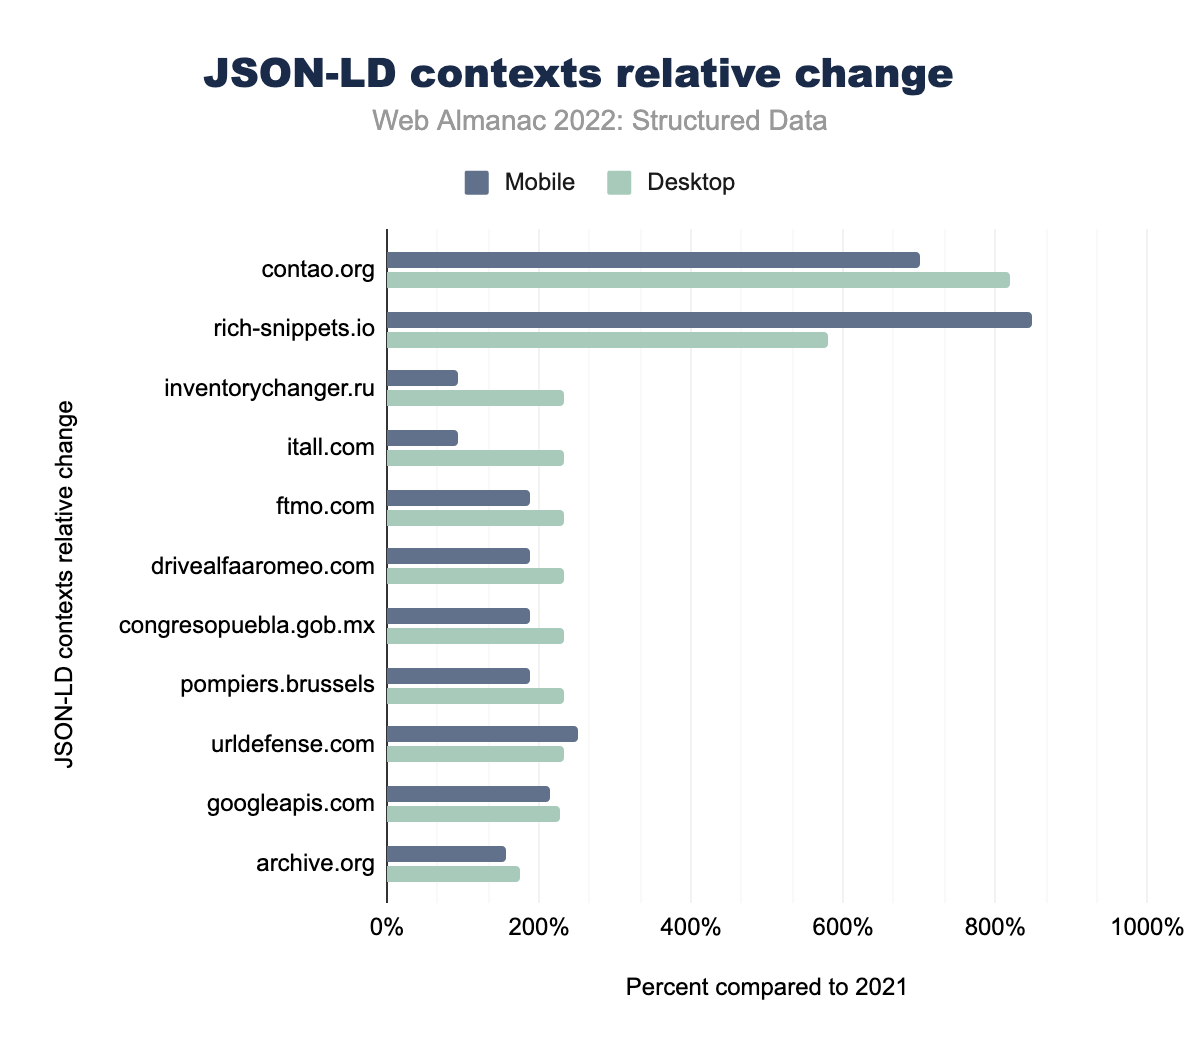 Cambiamenti relativi rispetto al 2021 dei contesti JSON-LD